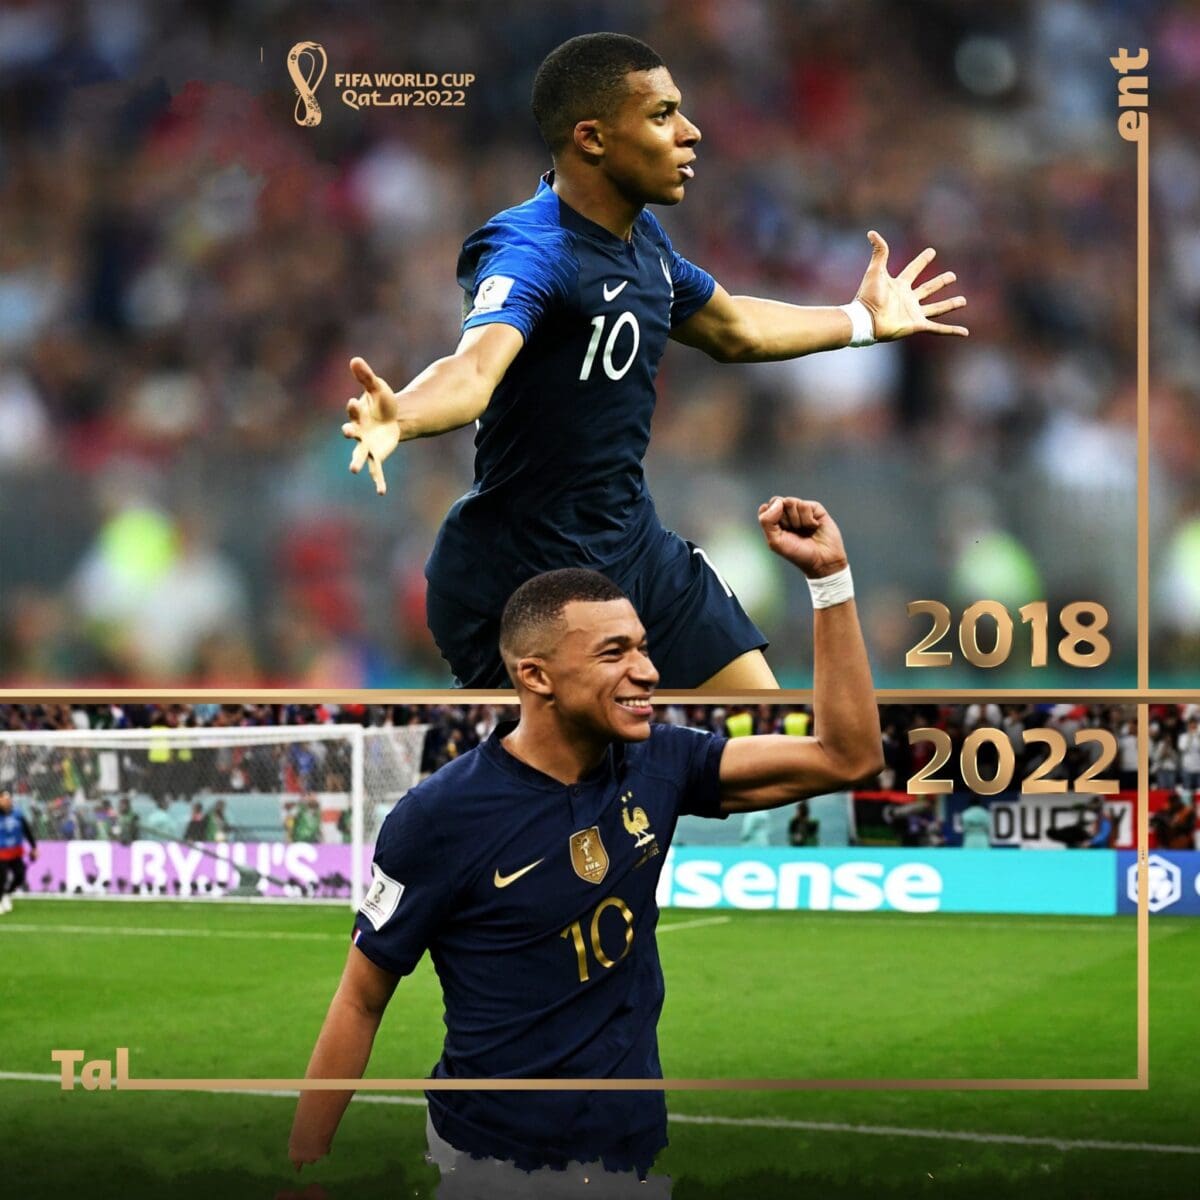 النجم الفرنسي كيليان مبابي يصبح أصغر لاعب يسجل 10 أهداف في كأس العالم